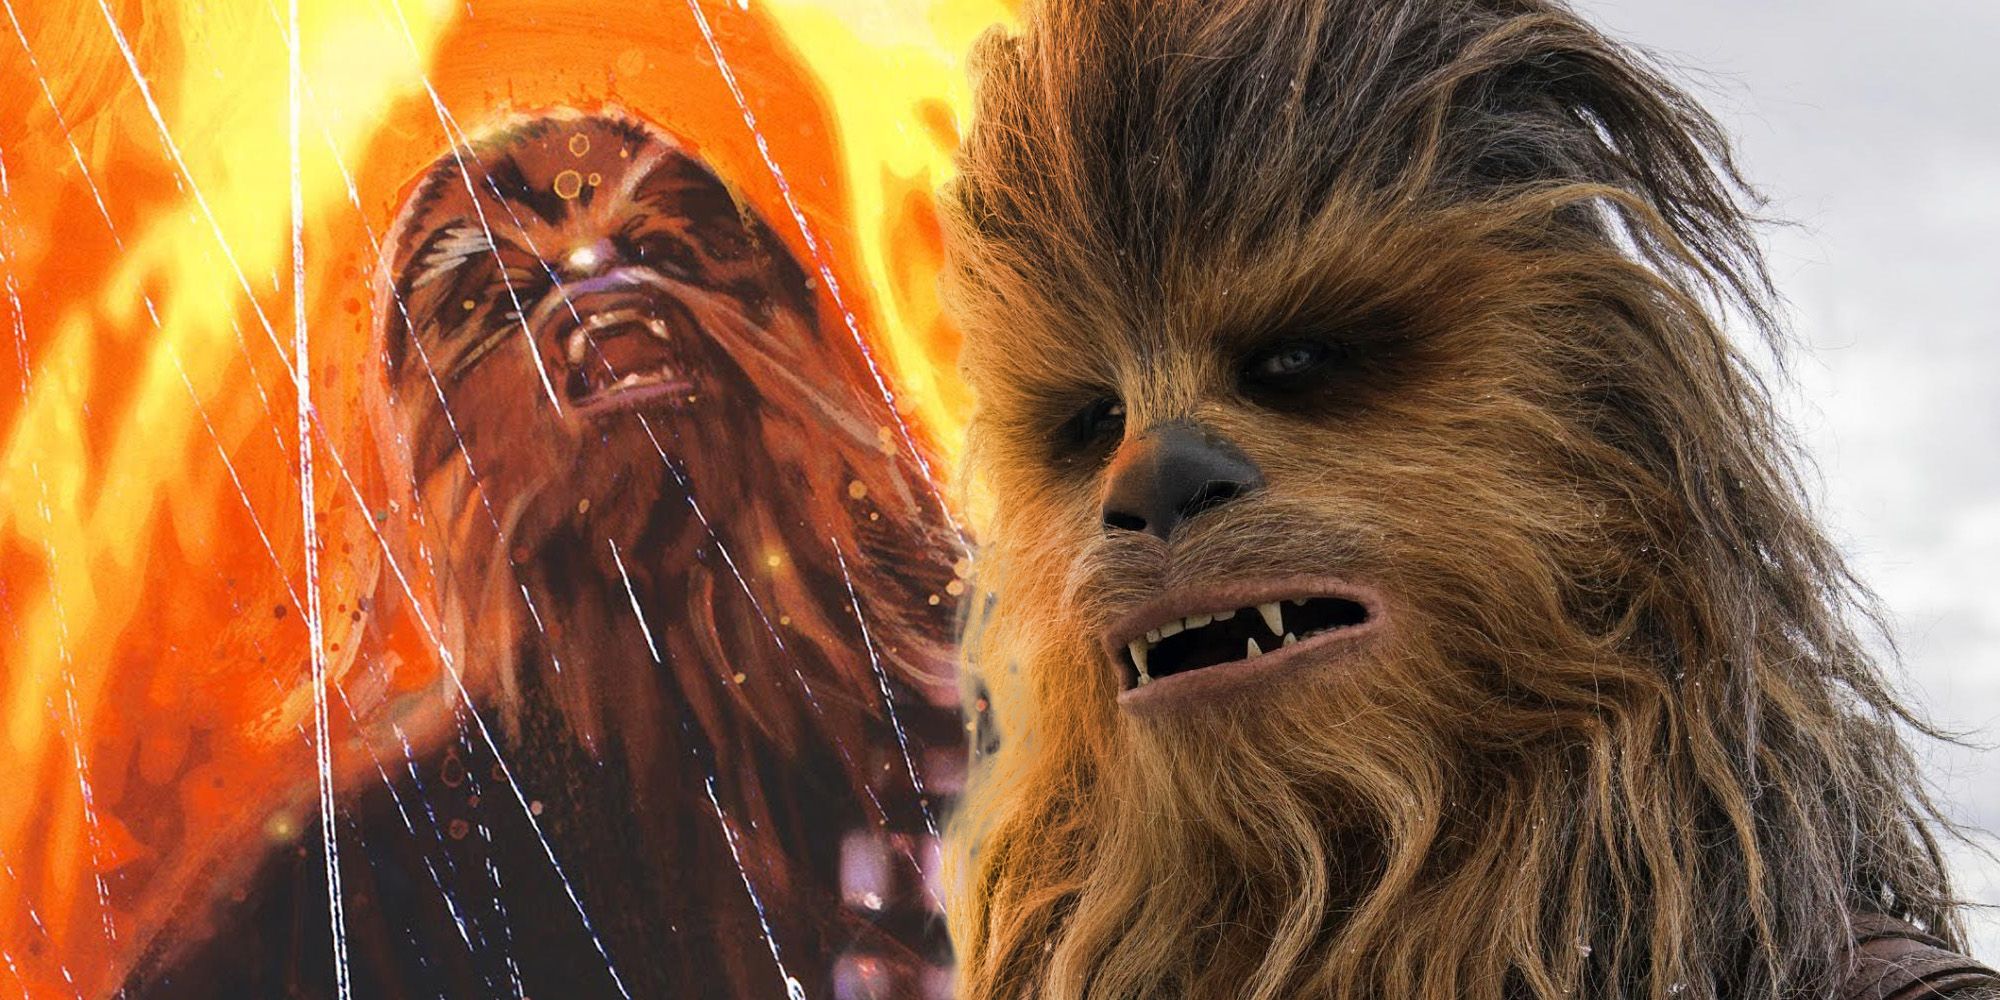 Chewbacca death star wars legends EU